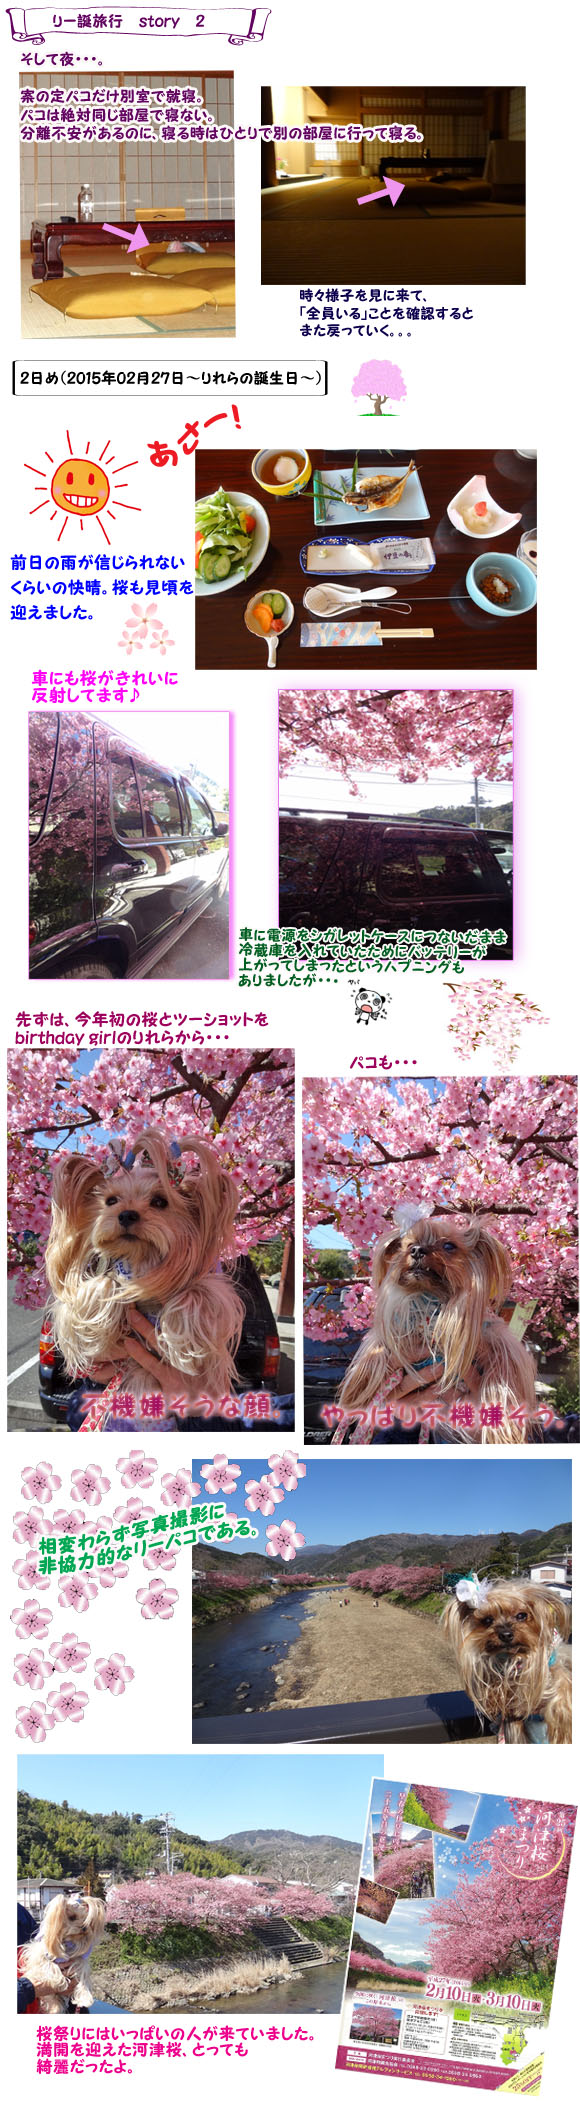 story2（01）桜祭り散策